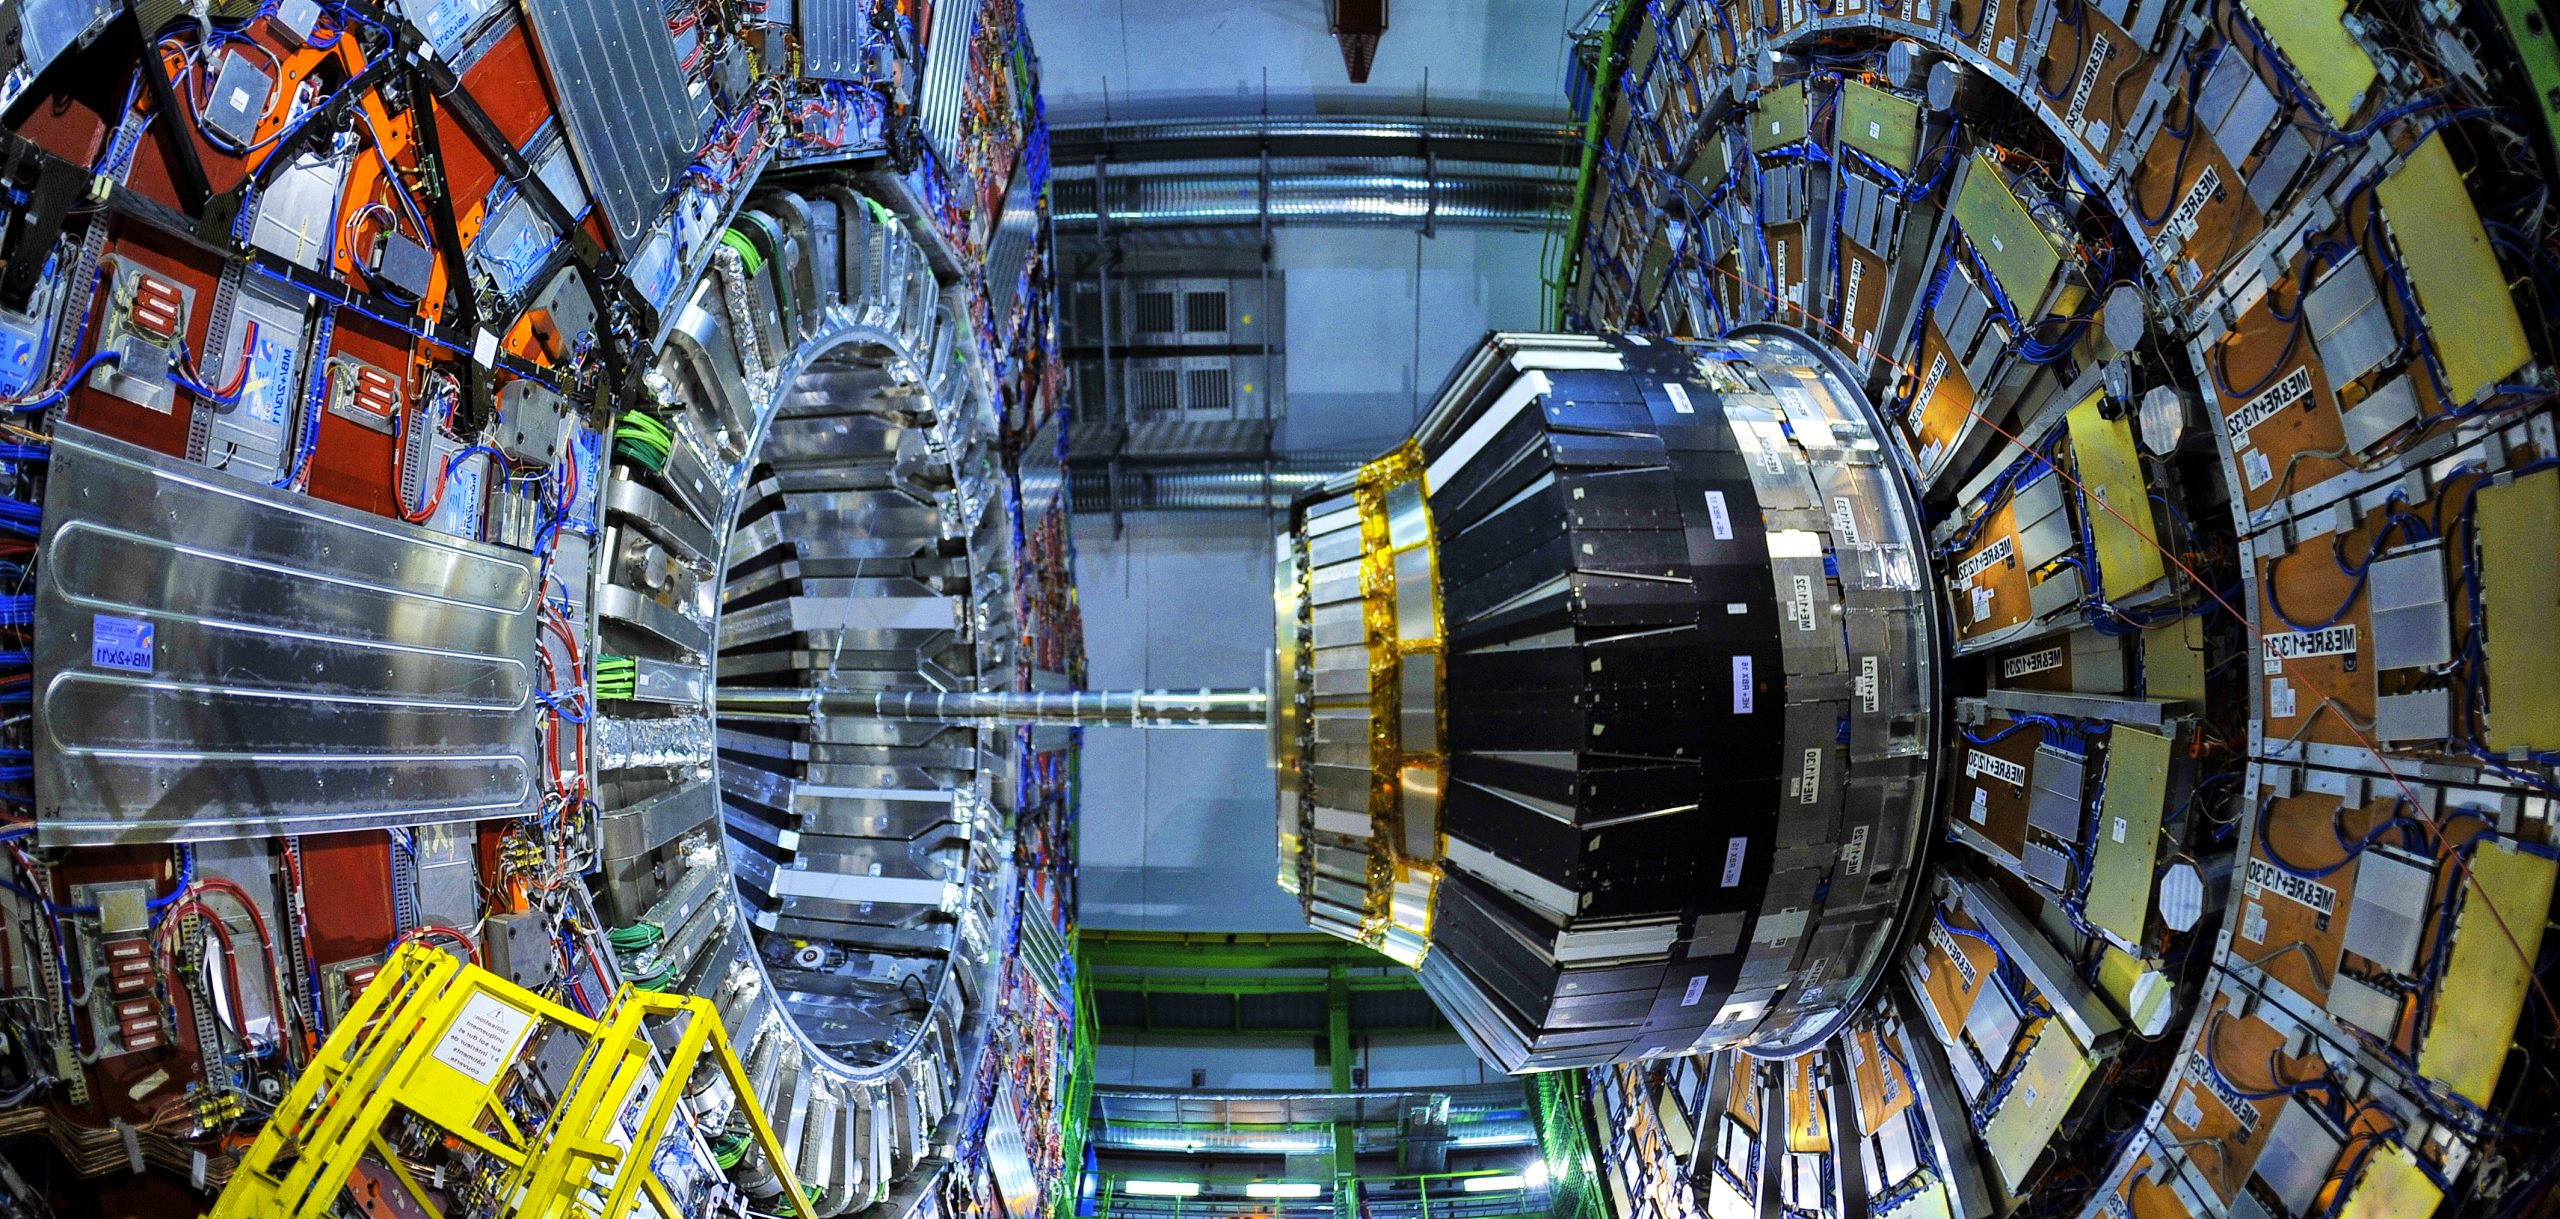 Large Hadron Collider, LHC